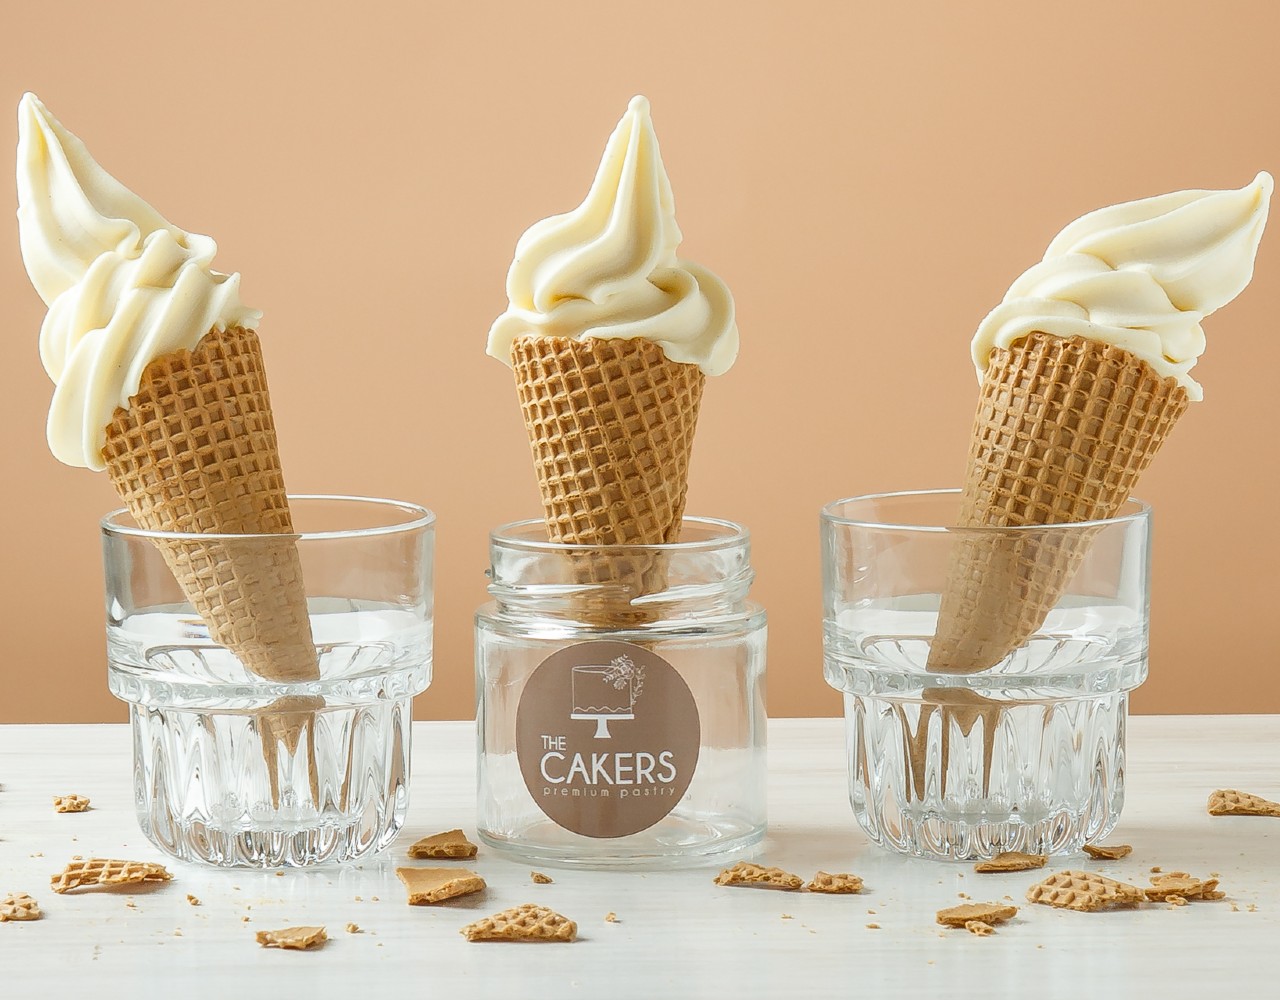 The Cakers: Βρήκαμε το πιο λαχταριστό vegan παγωτό μηχανής στη Γλυφάδα